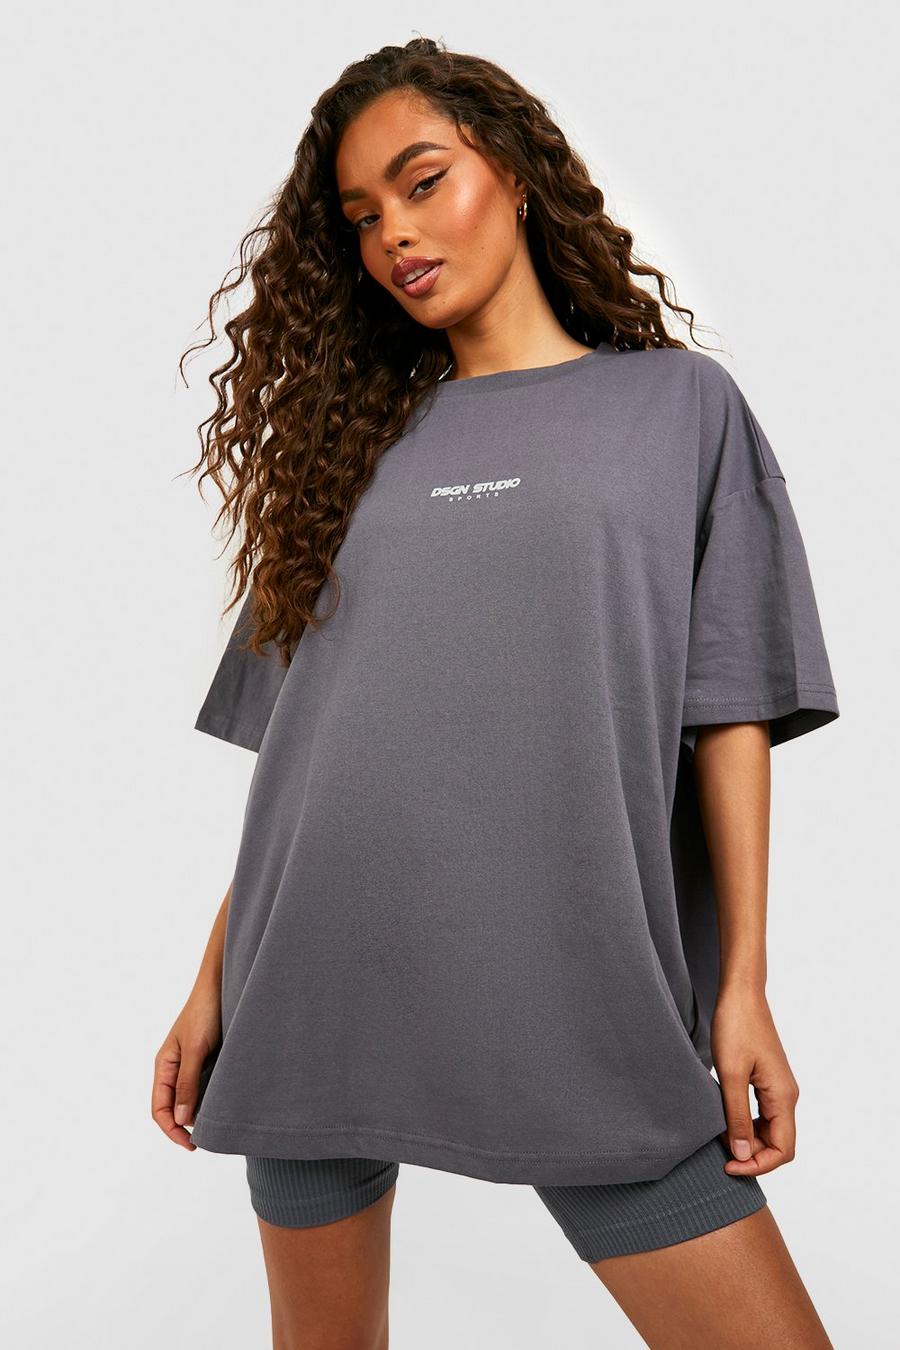 T-shirt oversize à slogan Dsgn Studio, Charcoal gris